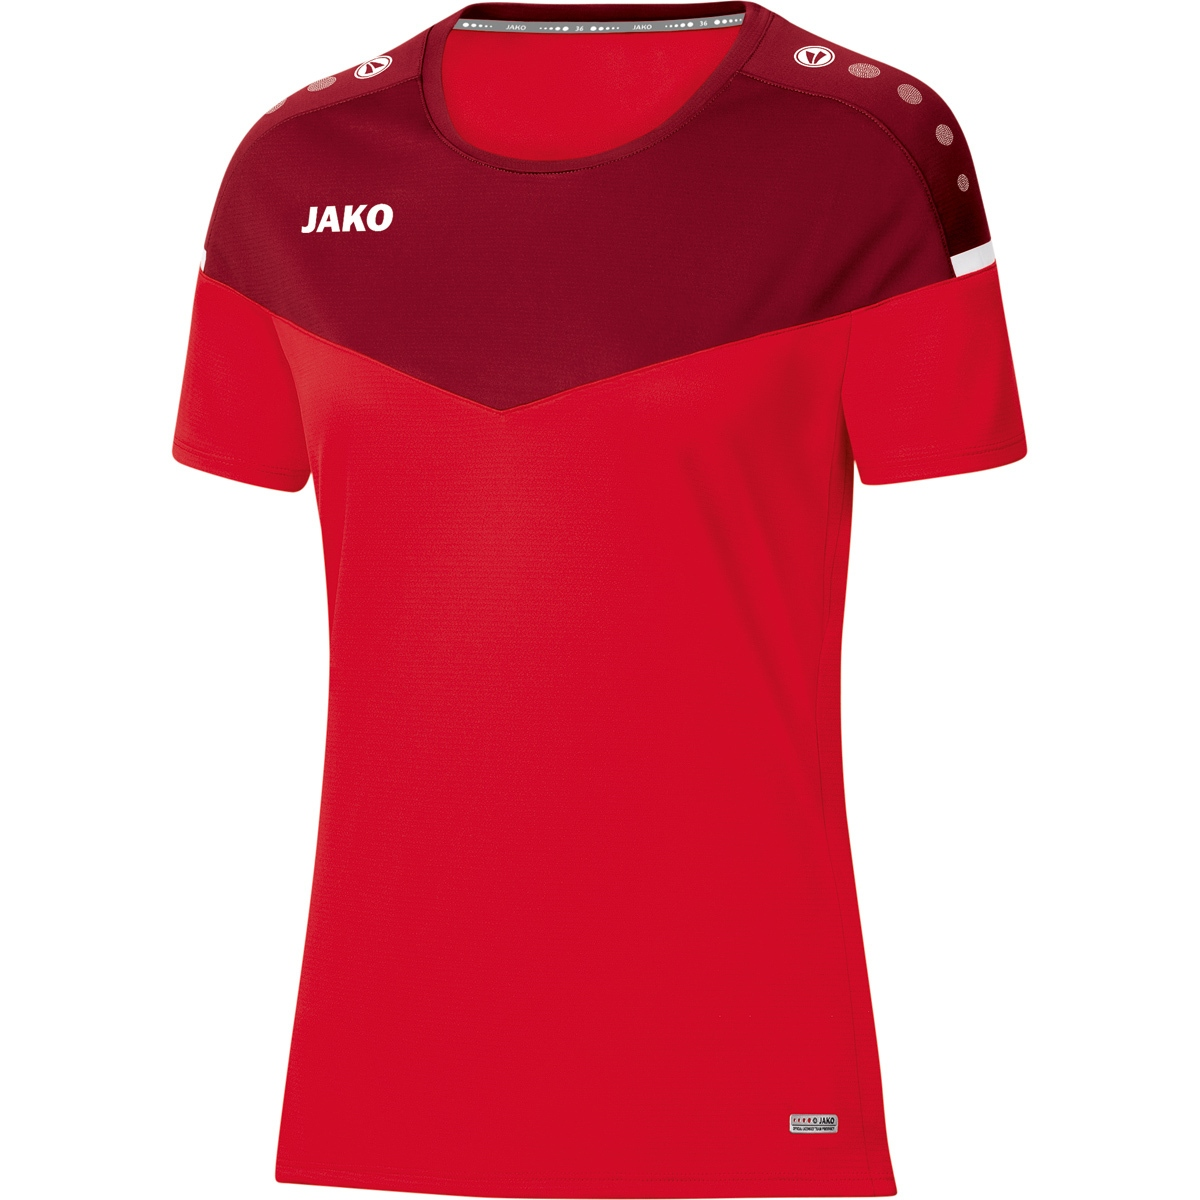 Champ T-Shirt Damen, JAKO 38, 6120 2.0 rot/weinrot, Gr.